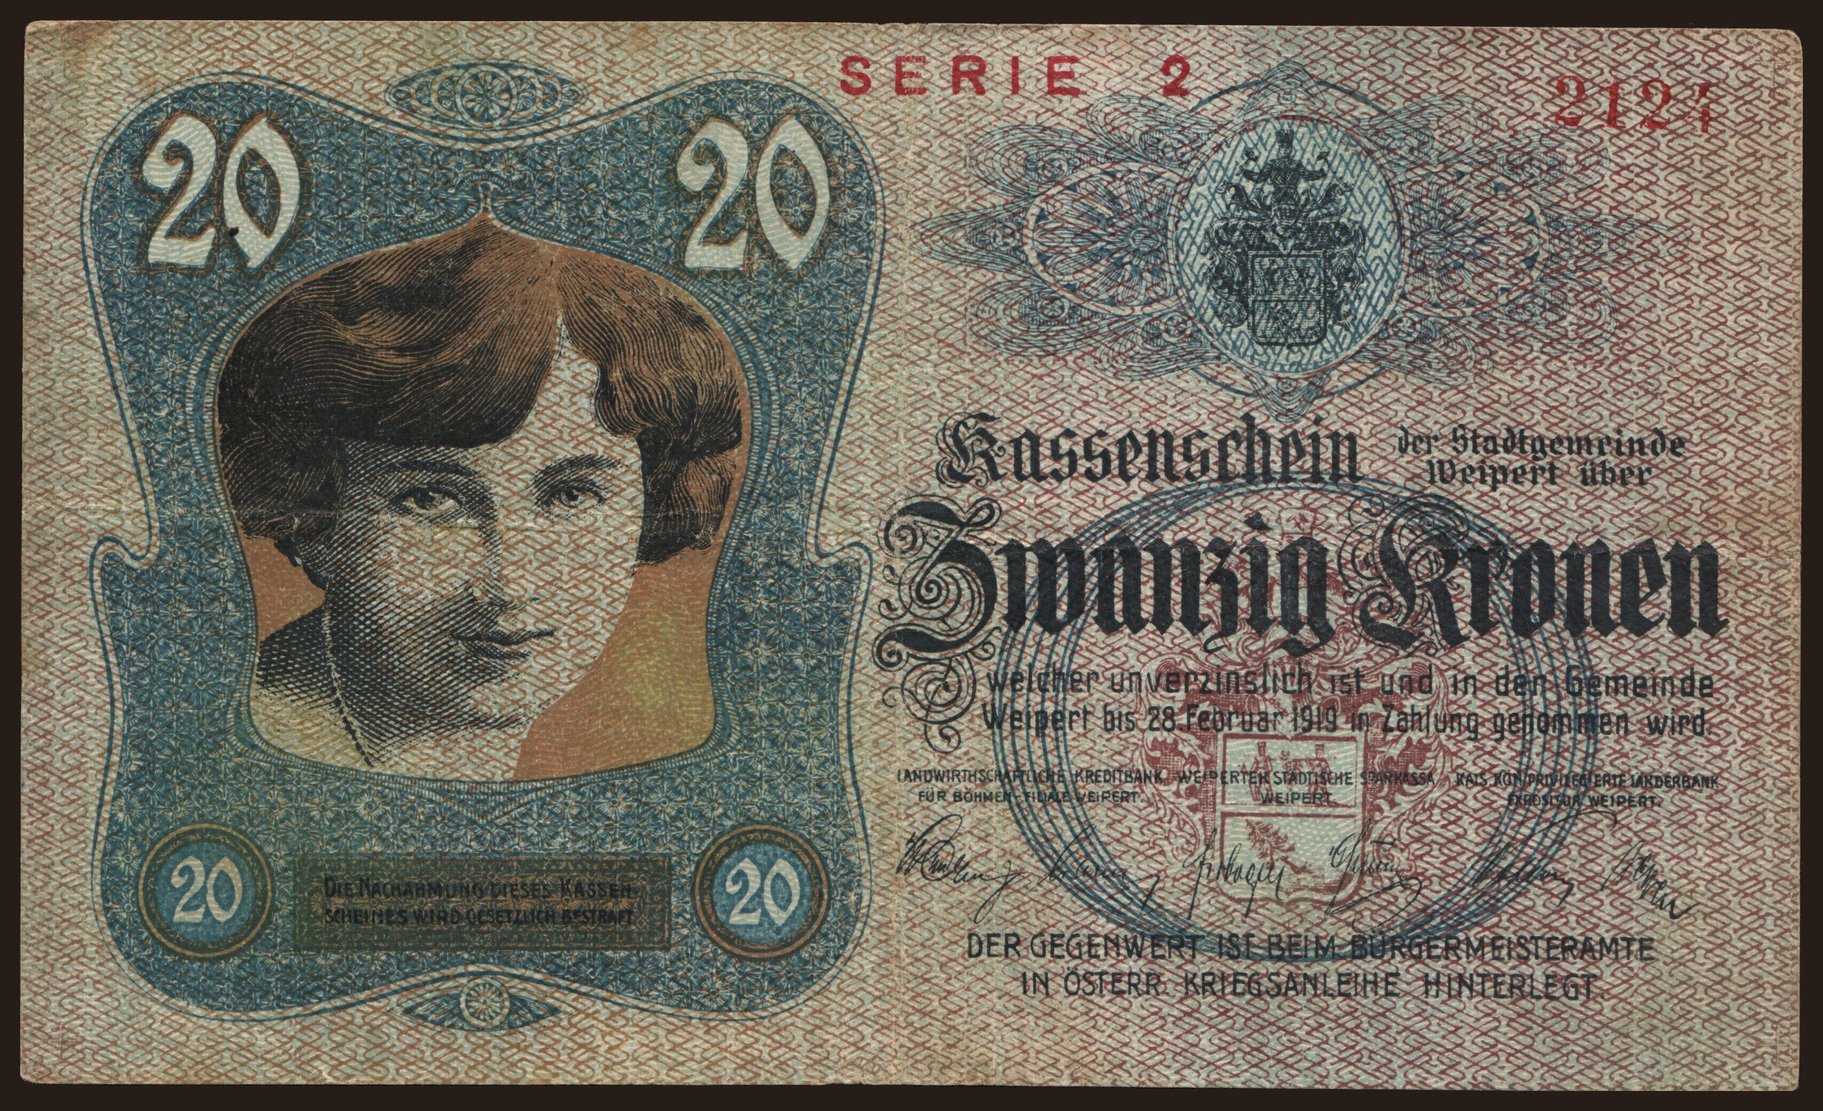 Weipert, 20 Kronen, 1918